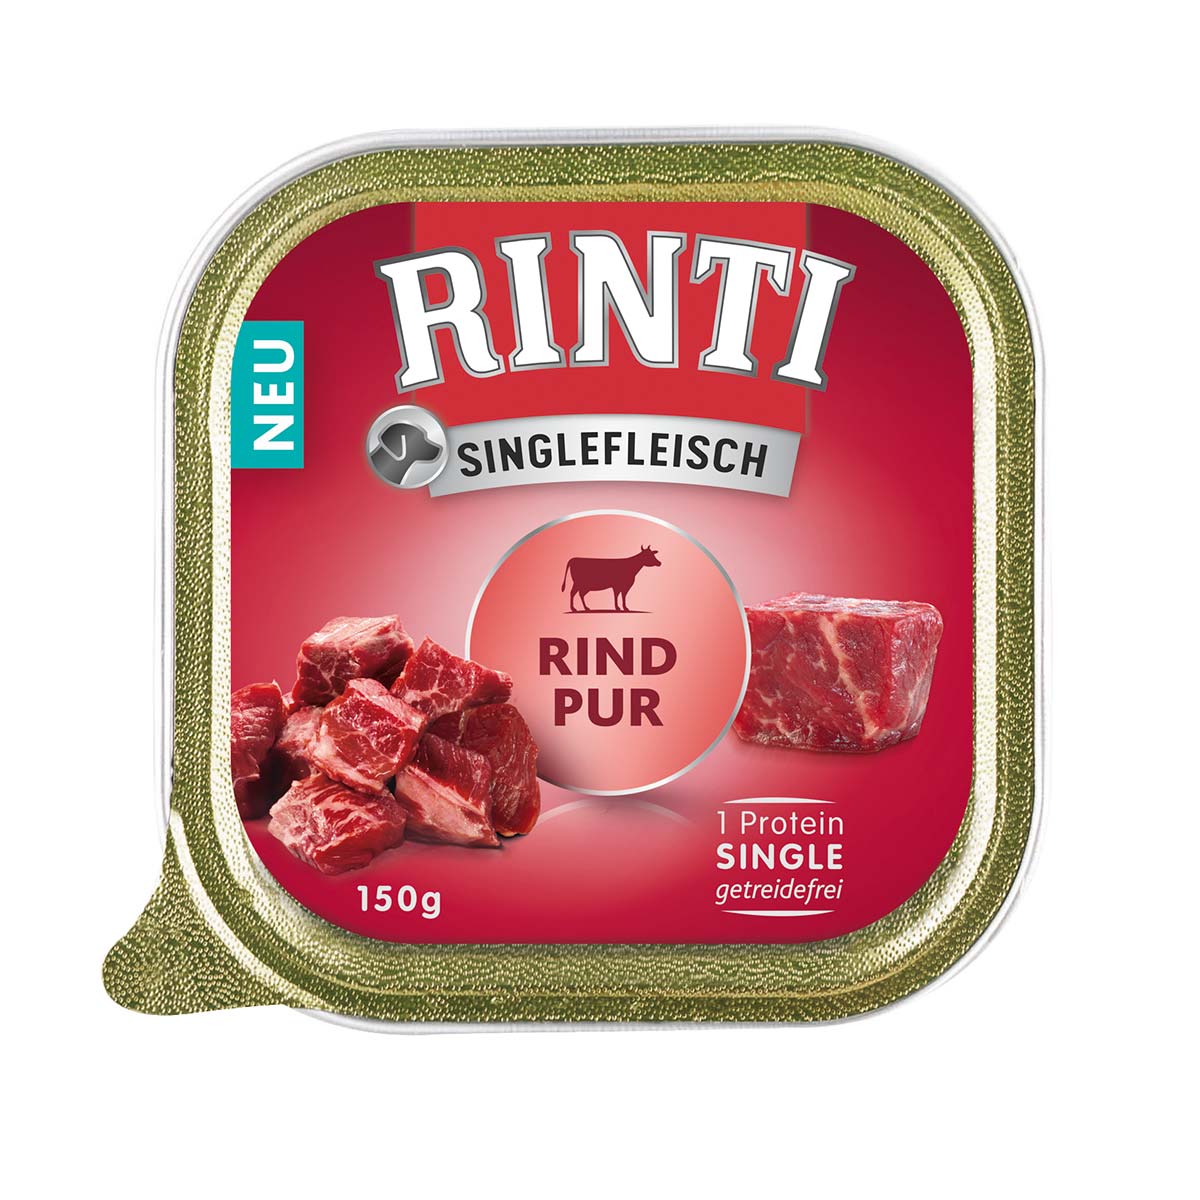 RINTI Singlefleisch Rind Pur 10x150g